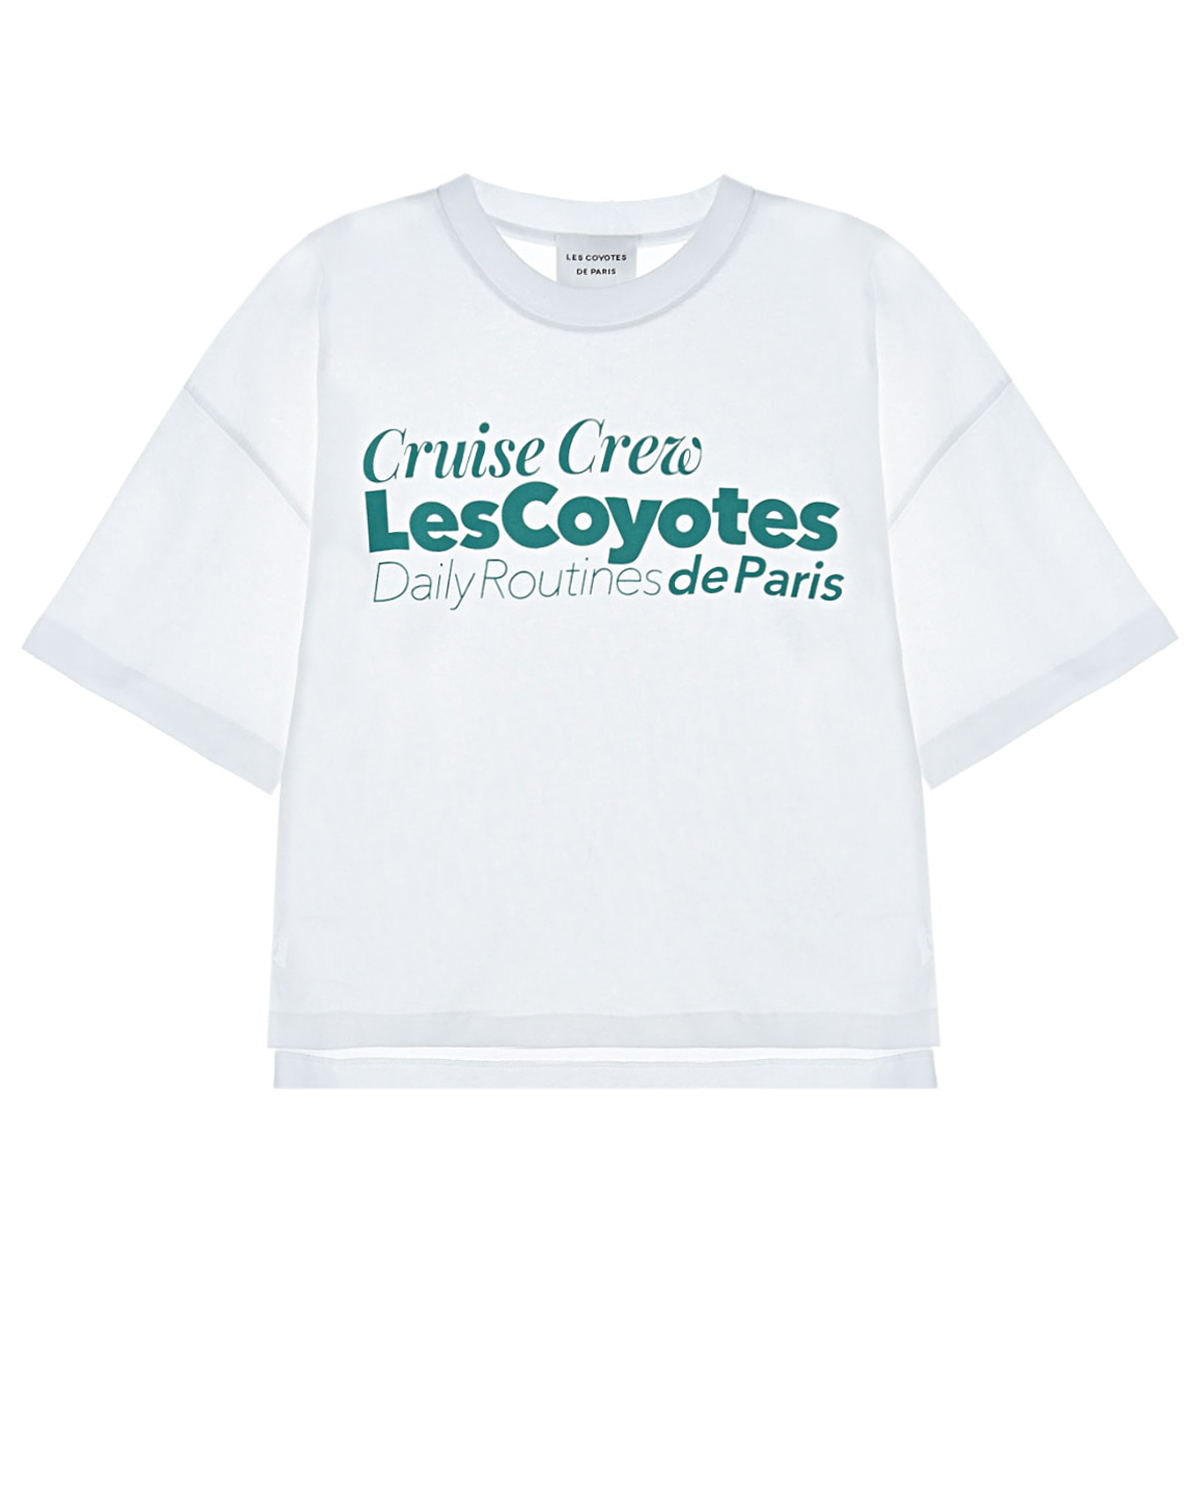 Белая футболка с принтом "Cruise Crew" Les Coyotes de Paris детская, размер 152, цвет белый - фото 1